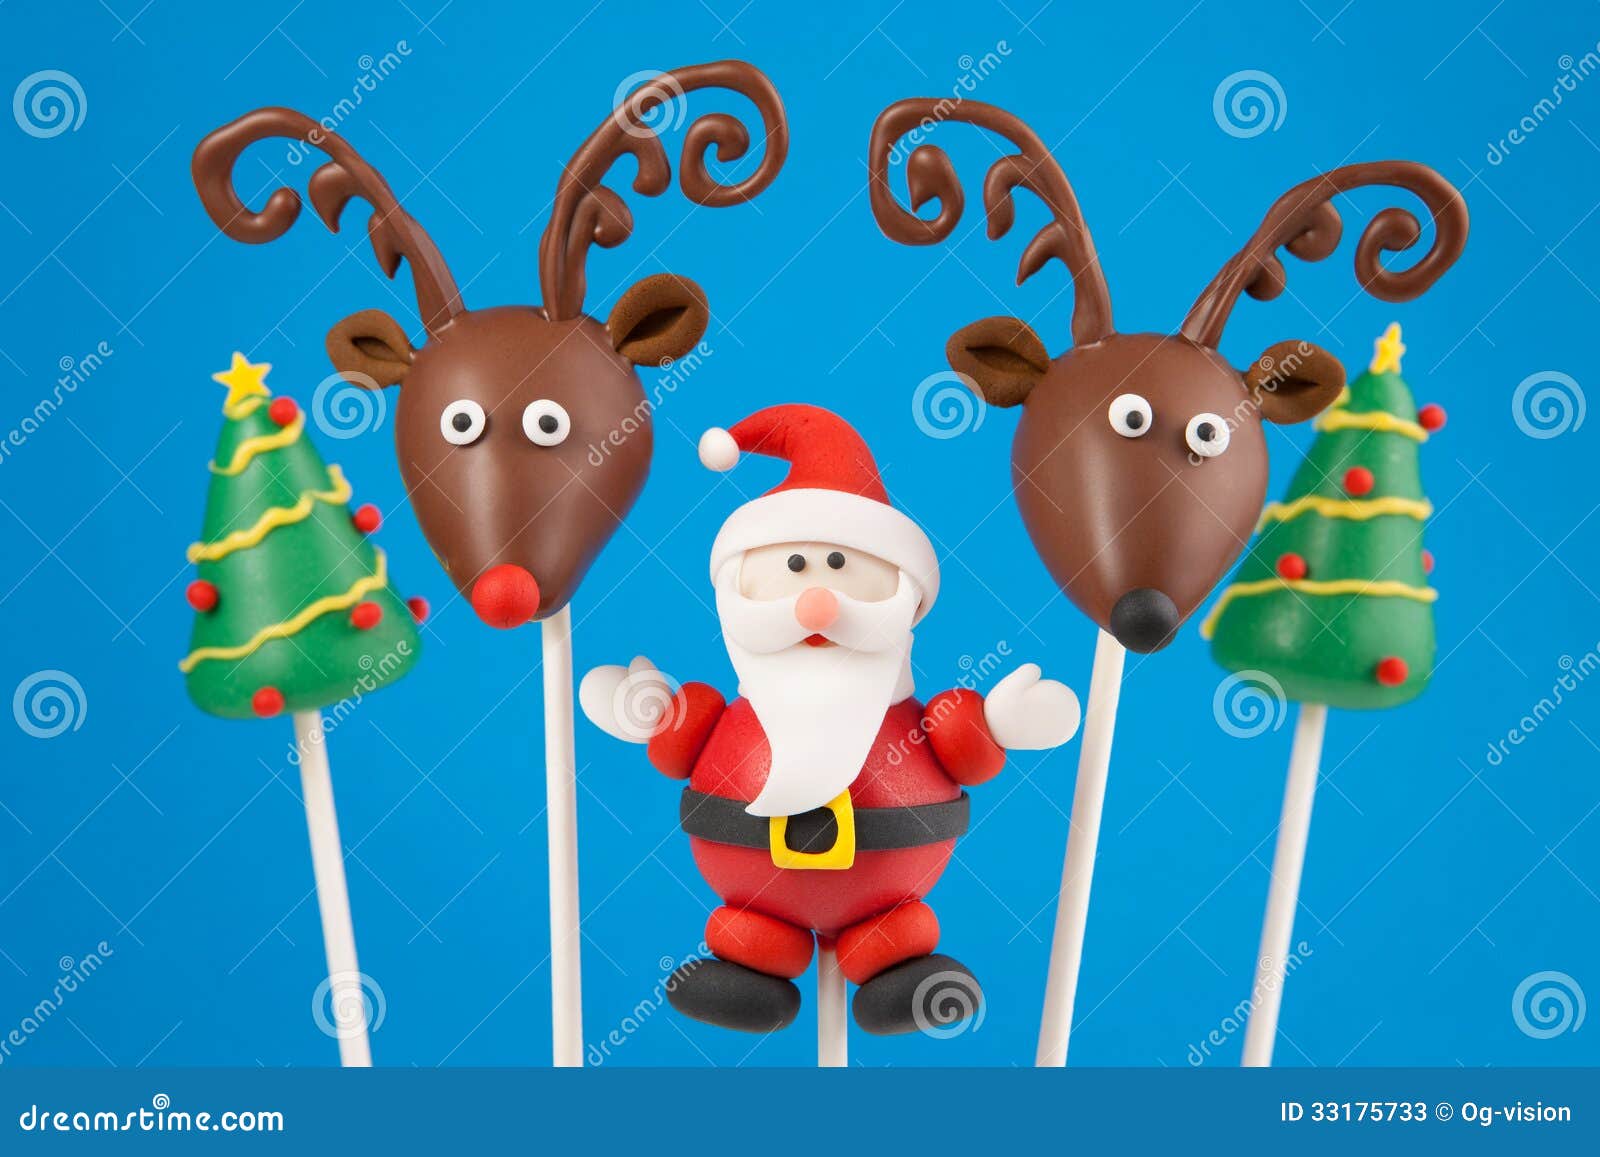 Christmas cake pops stock image. Image of background